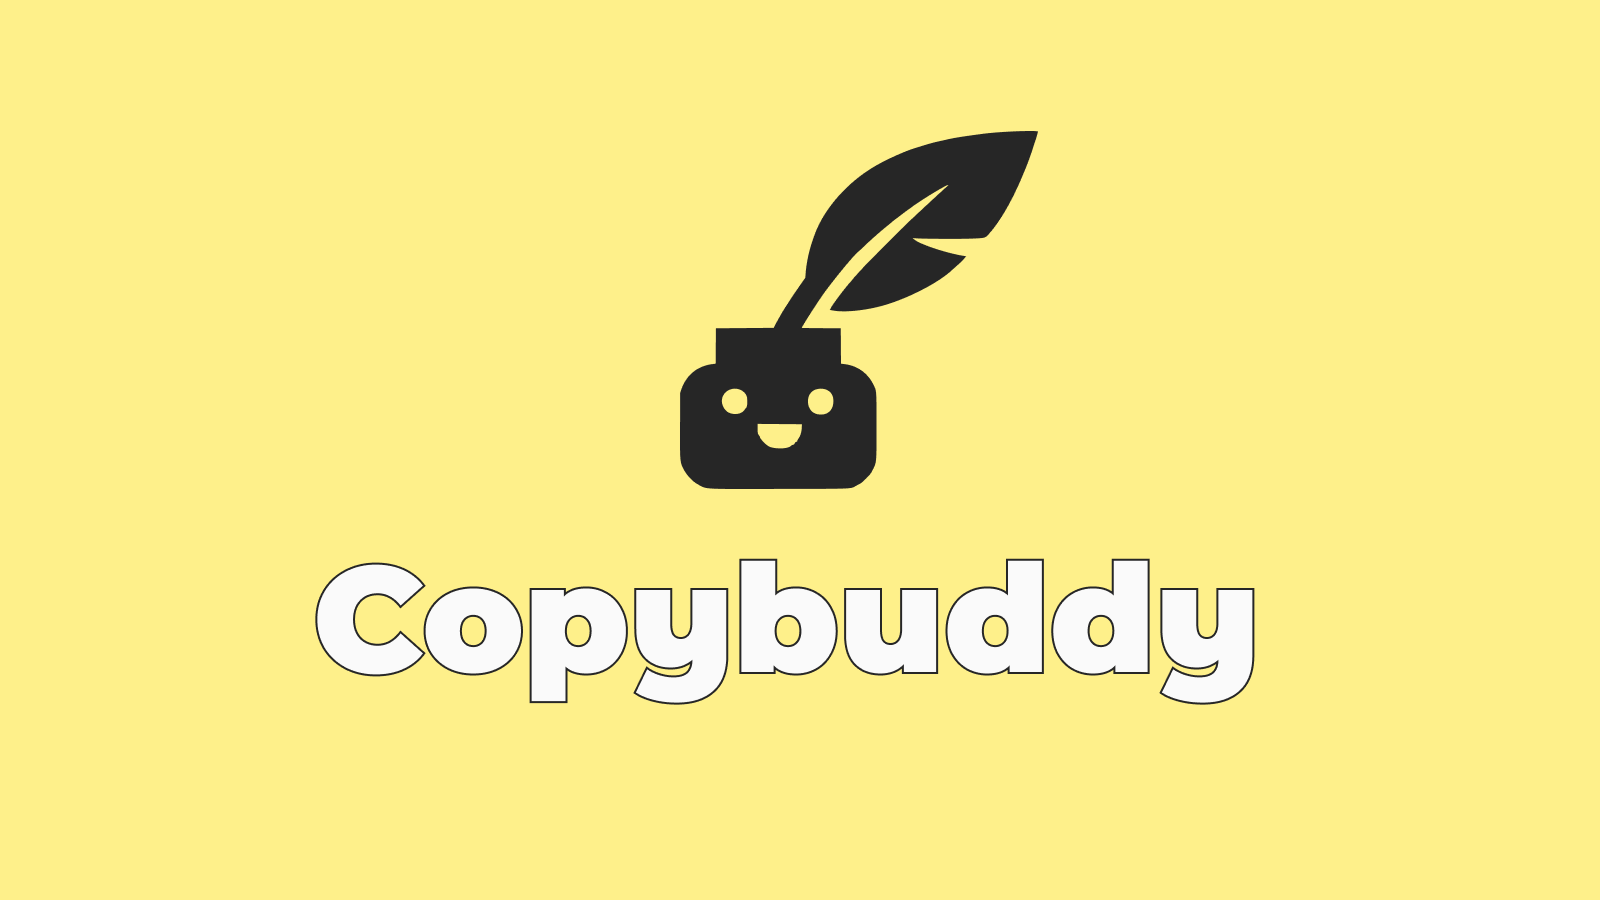 Copybuddy - AI copywriting tool for product descriptions, blogs, marketing  | Shopify App Store